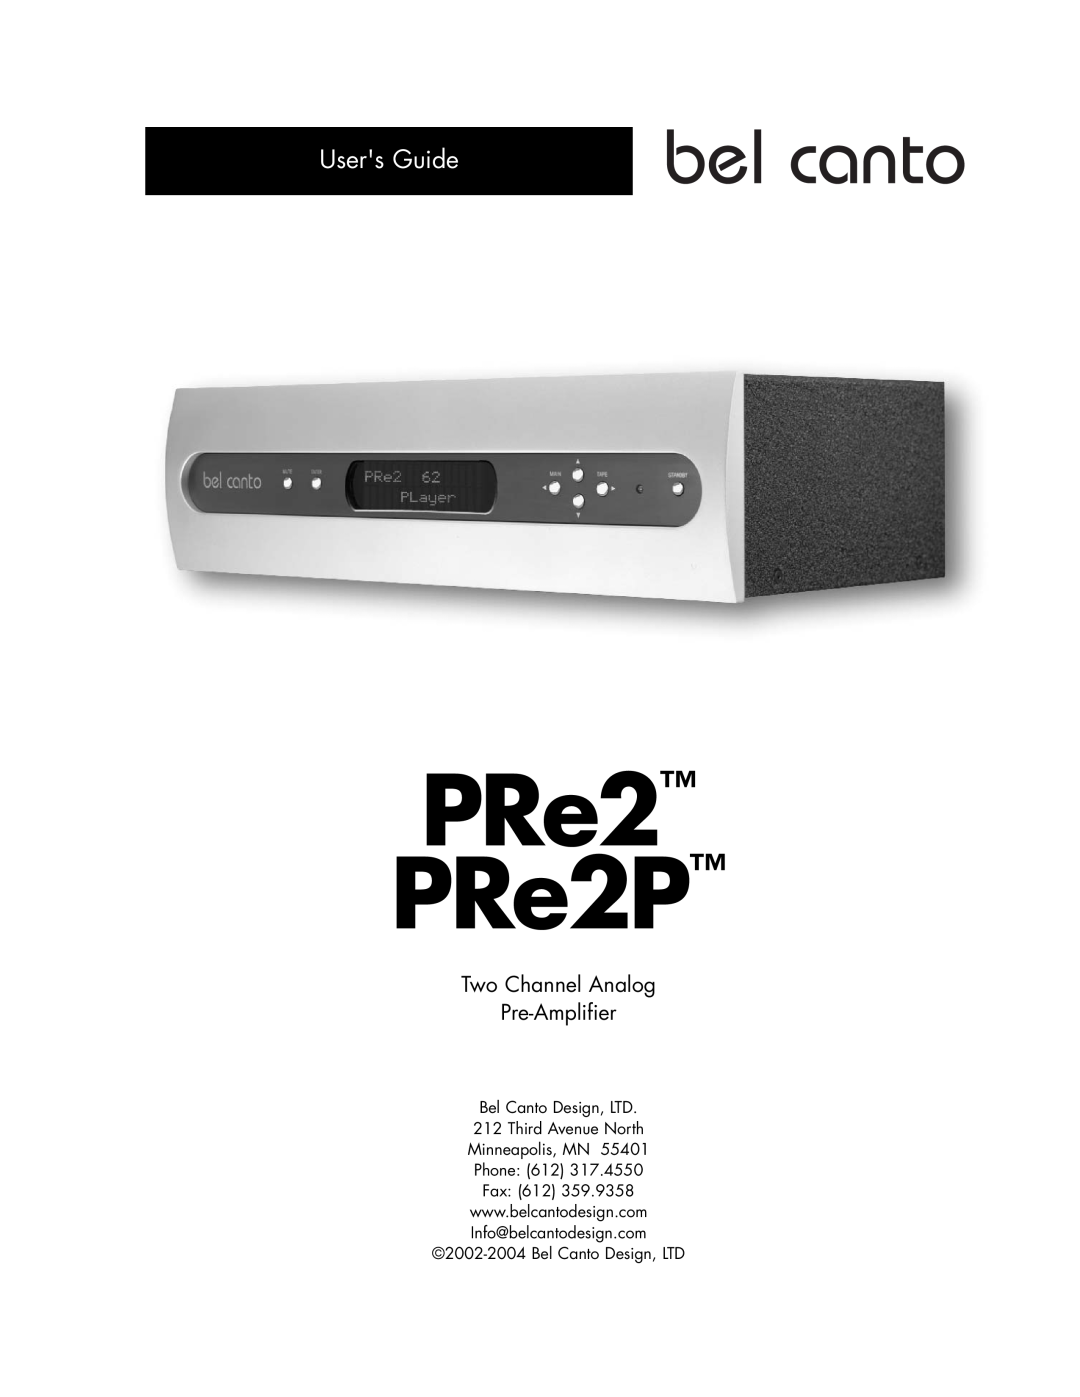 Bel Canto Design PRe2TM PRe2PTM manual Users Guide, PRe2 PRe2P, Minneapolis, MN Phone 612 Fax 